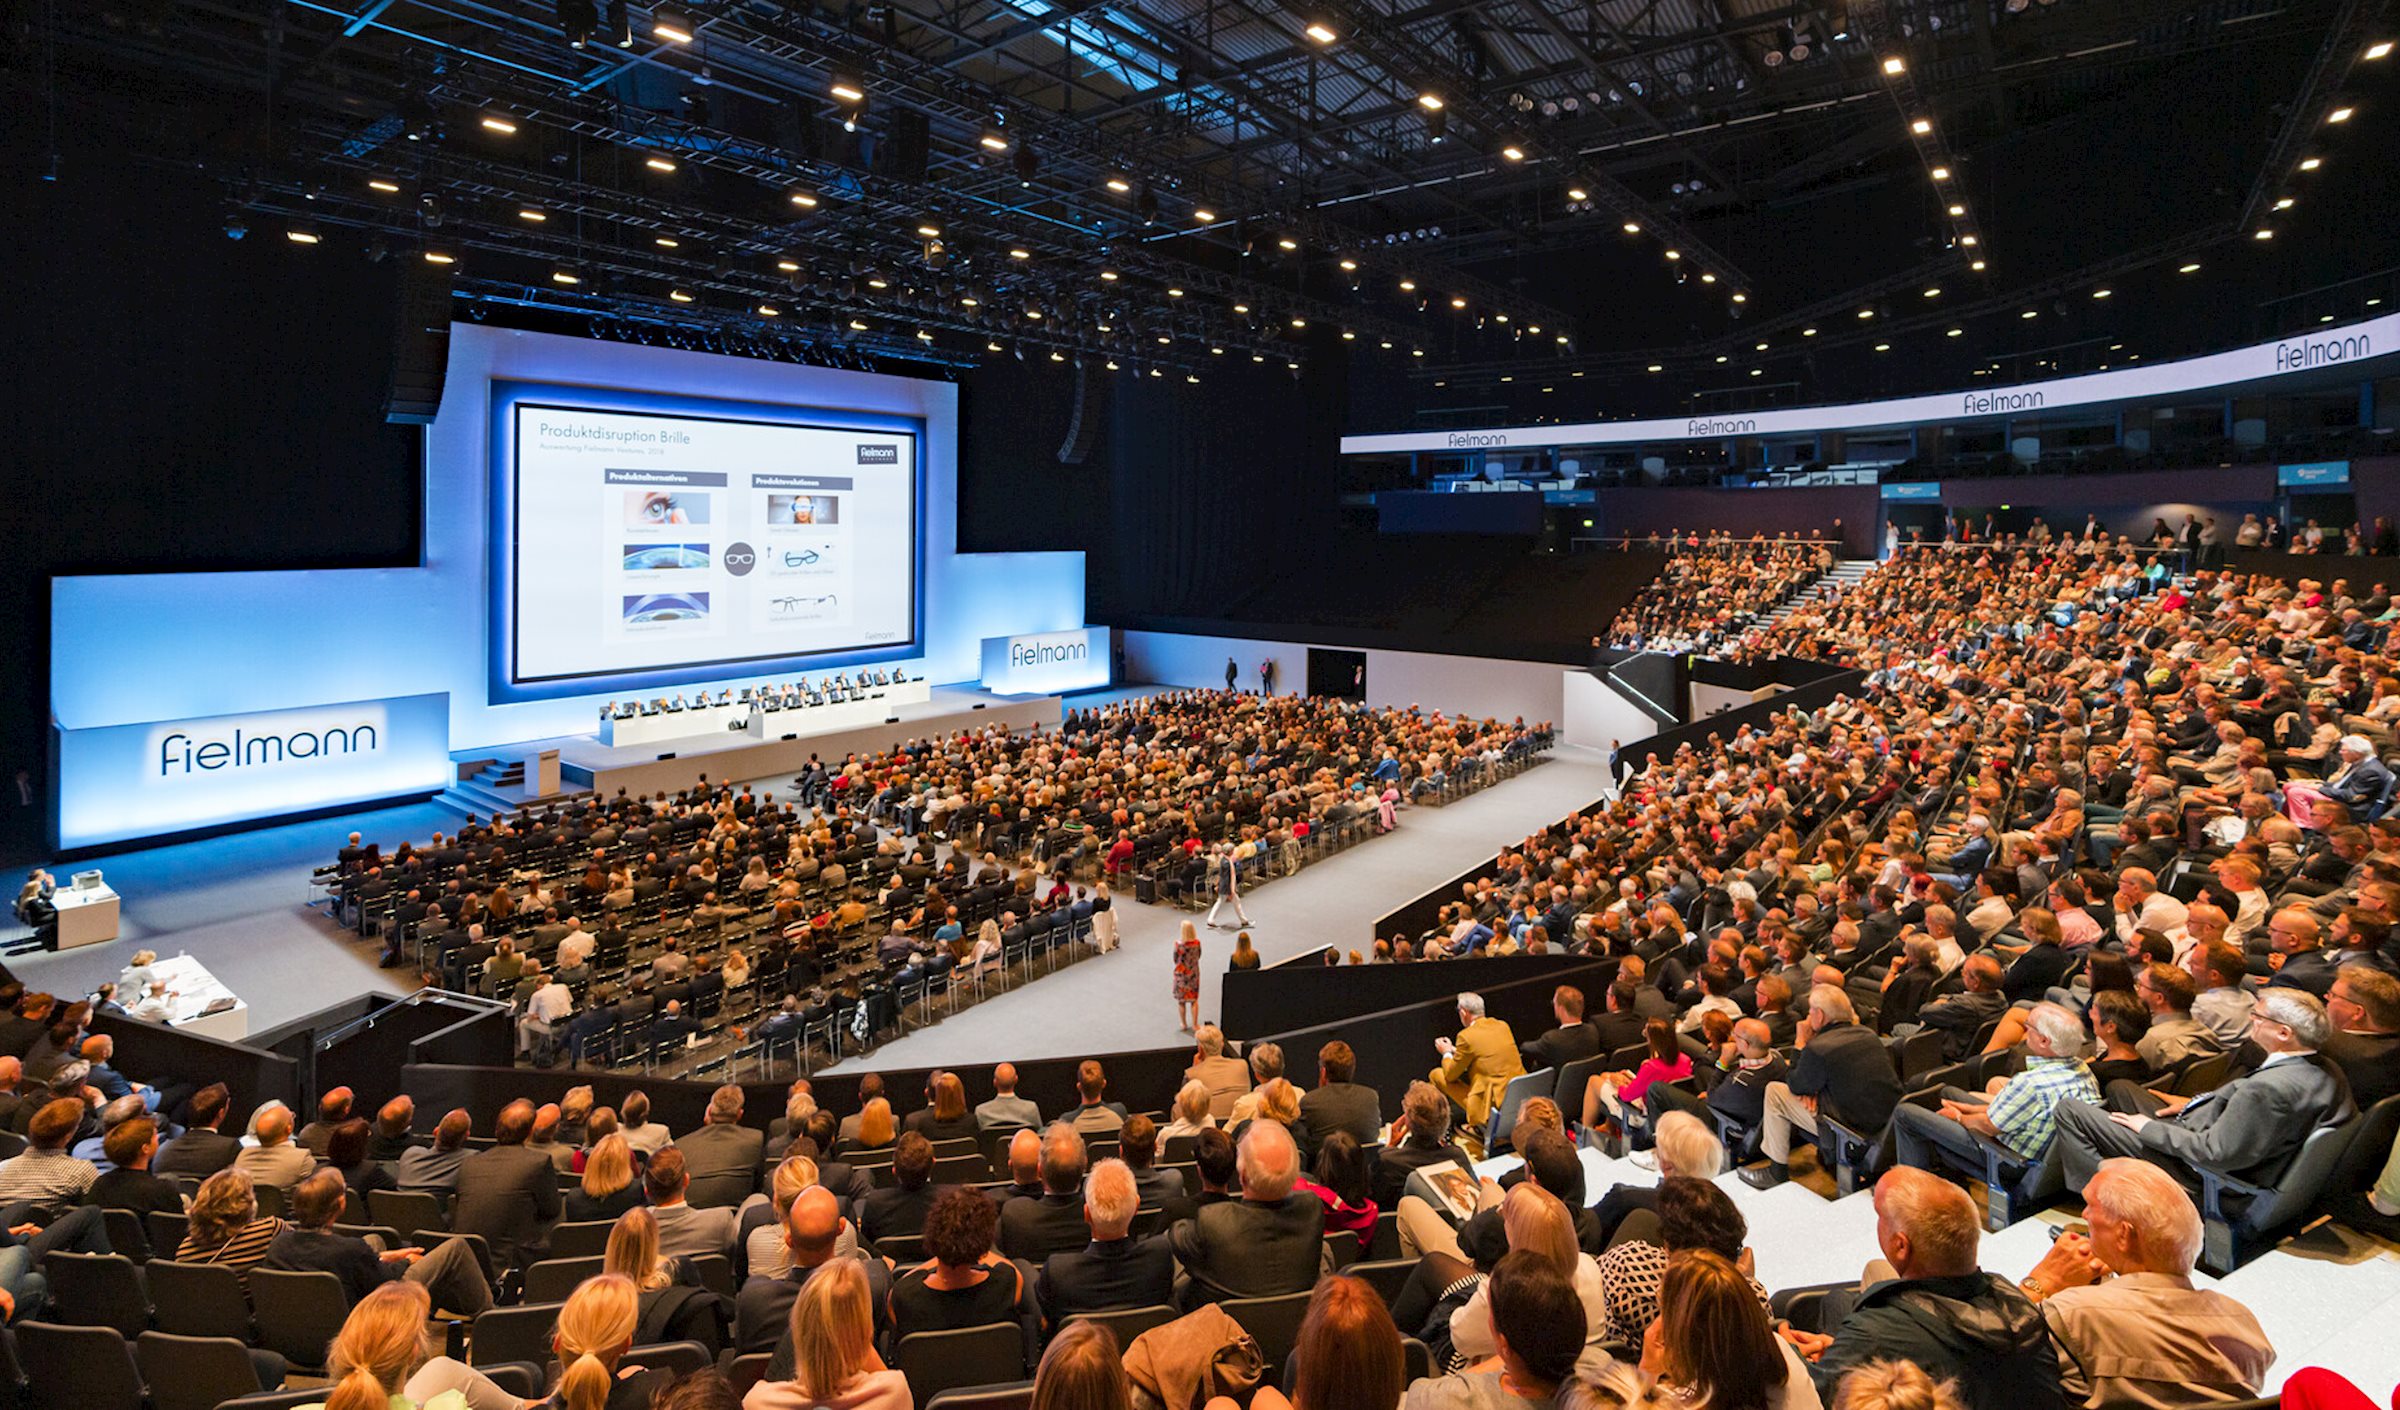 Fielmann Annual Meeting 2019 tuvo lugar en el Barclaycard Arena de Hamburgo - El equipo creativo de PRG diseñó un concepto de sala y se lo presentó junto con las visualizaciones correspondientes.